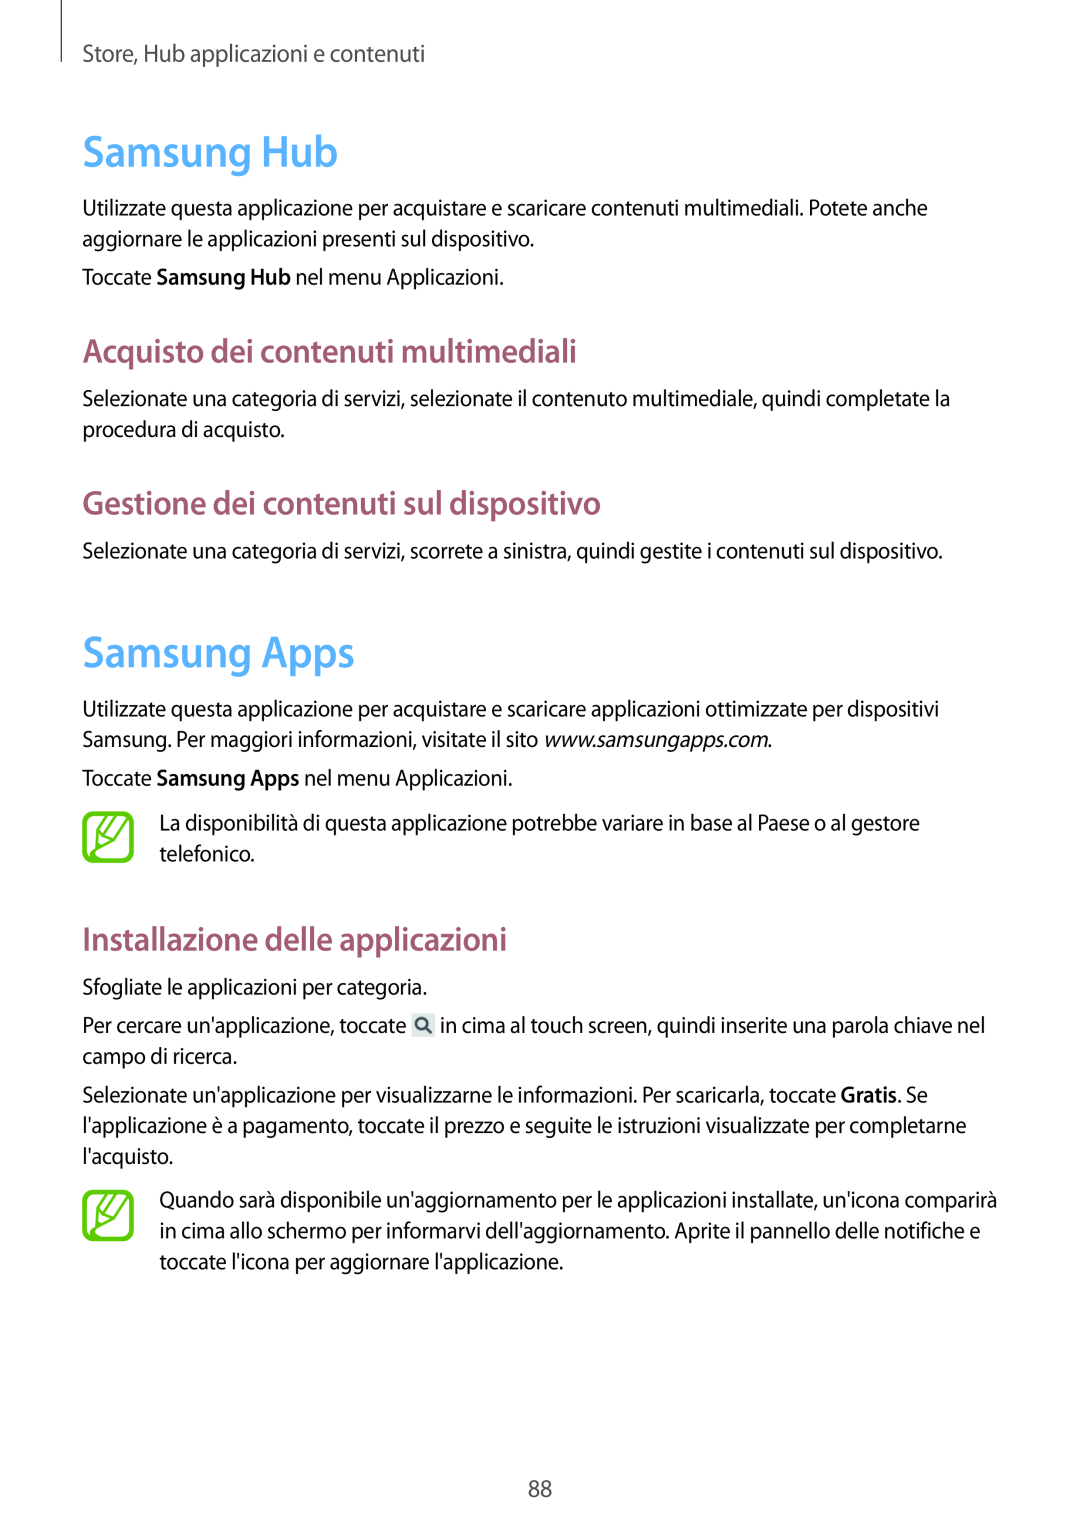 Samsung GT-I9195DKVLUX Samsung Hub, Samsung Apps, Acquisto dei contenuti multimediali, Store, Hub applicazioni e contenuti 